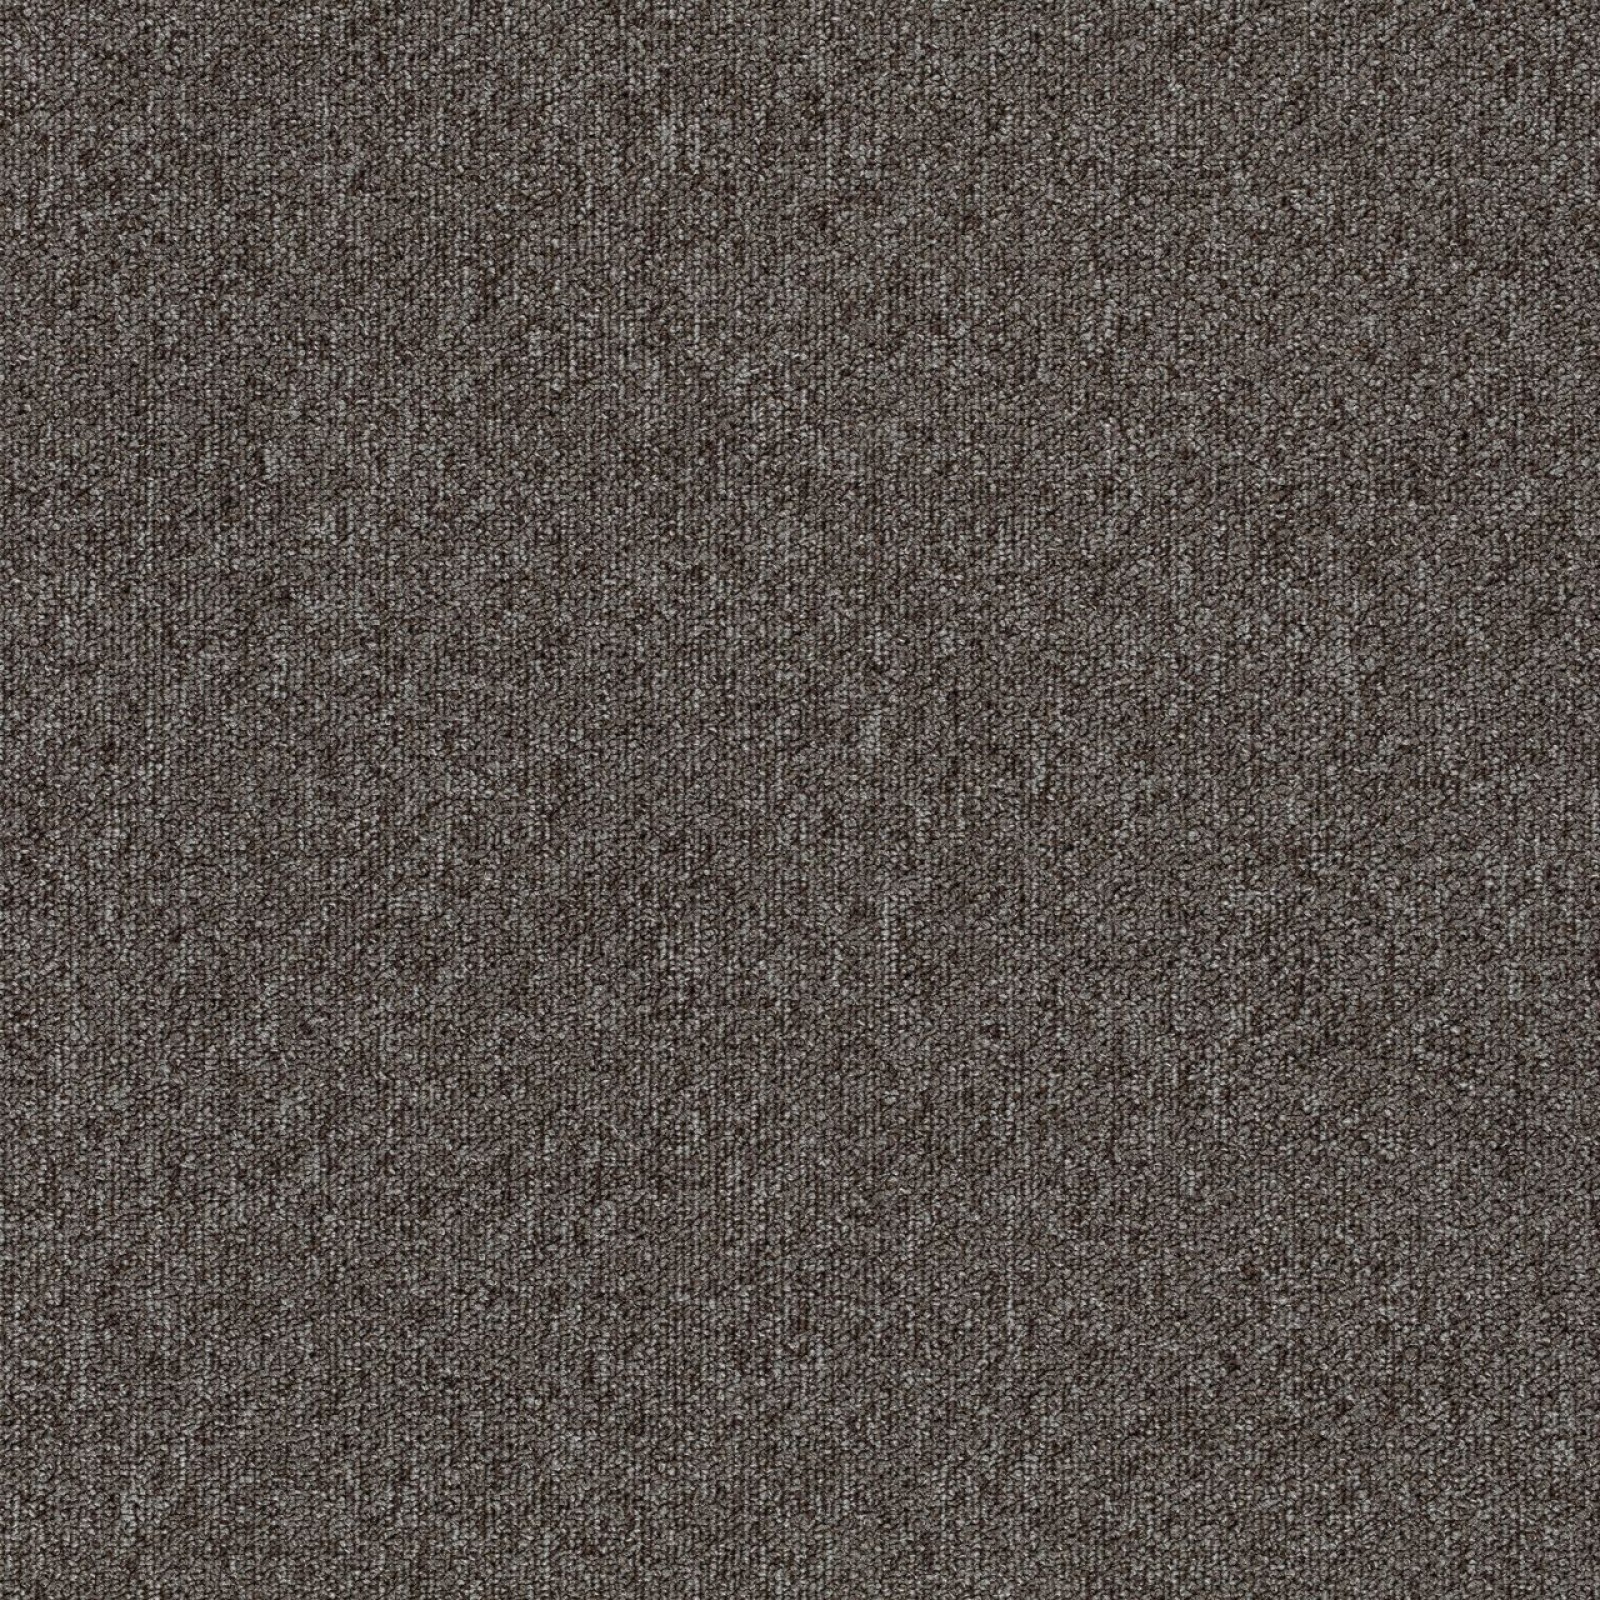 Vzor - 4364 brown